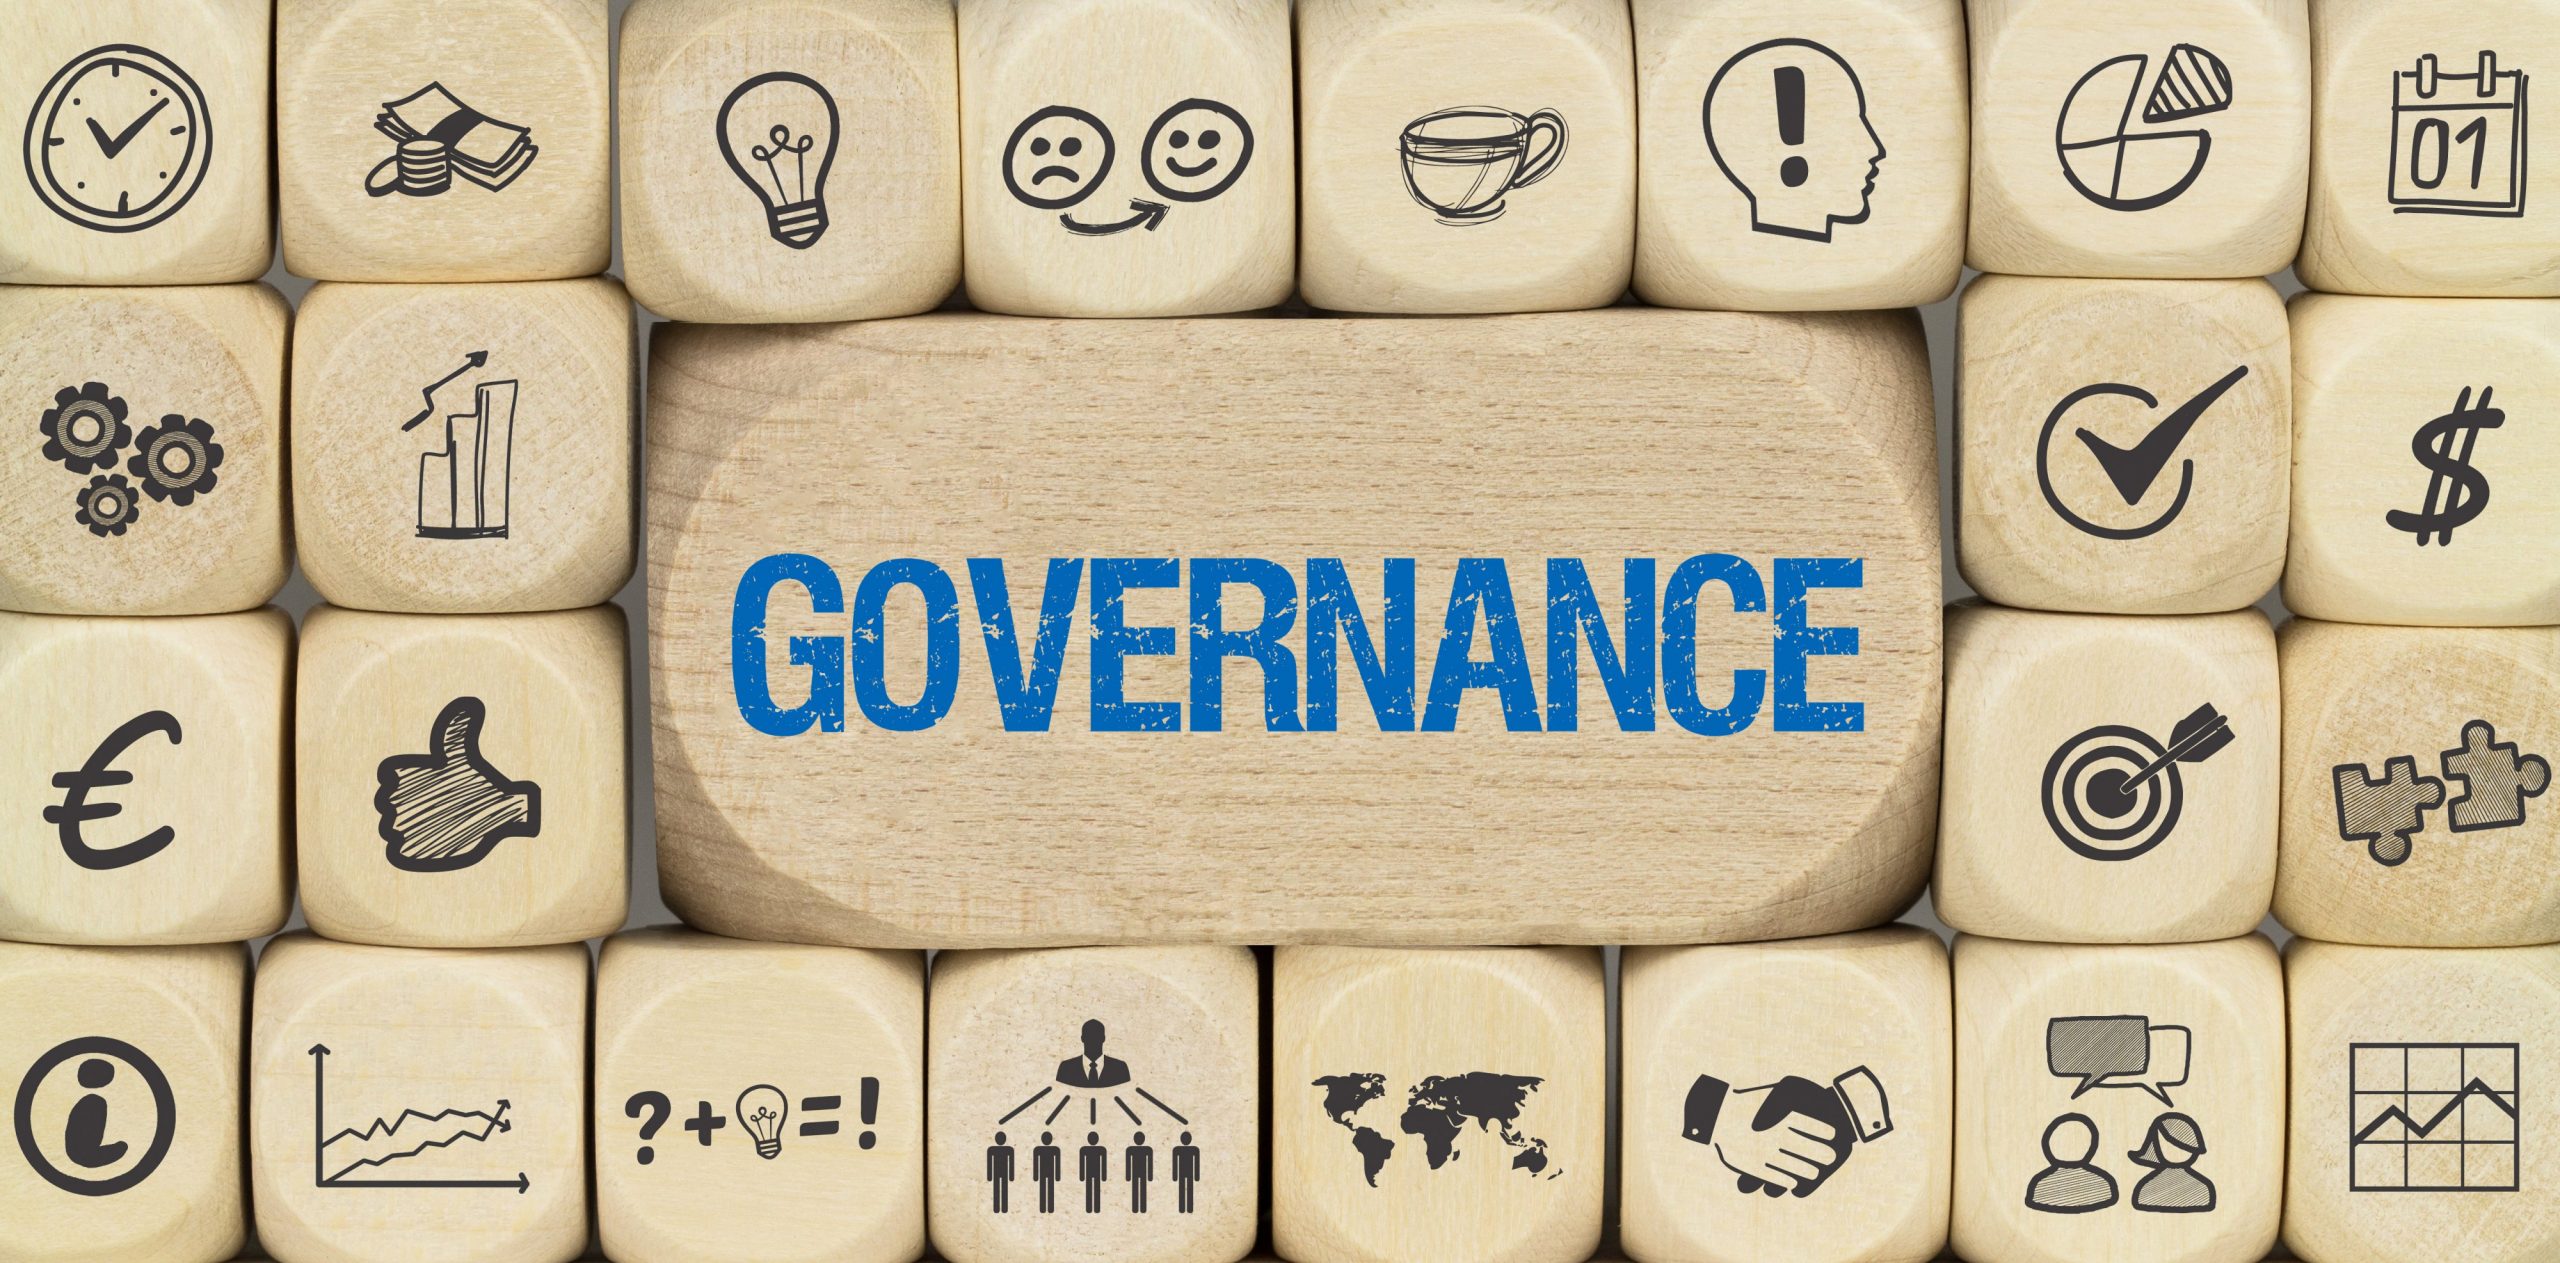 Beyond Reactive Governance